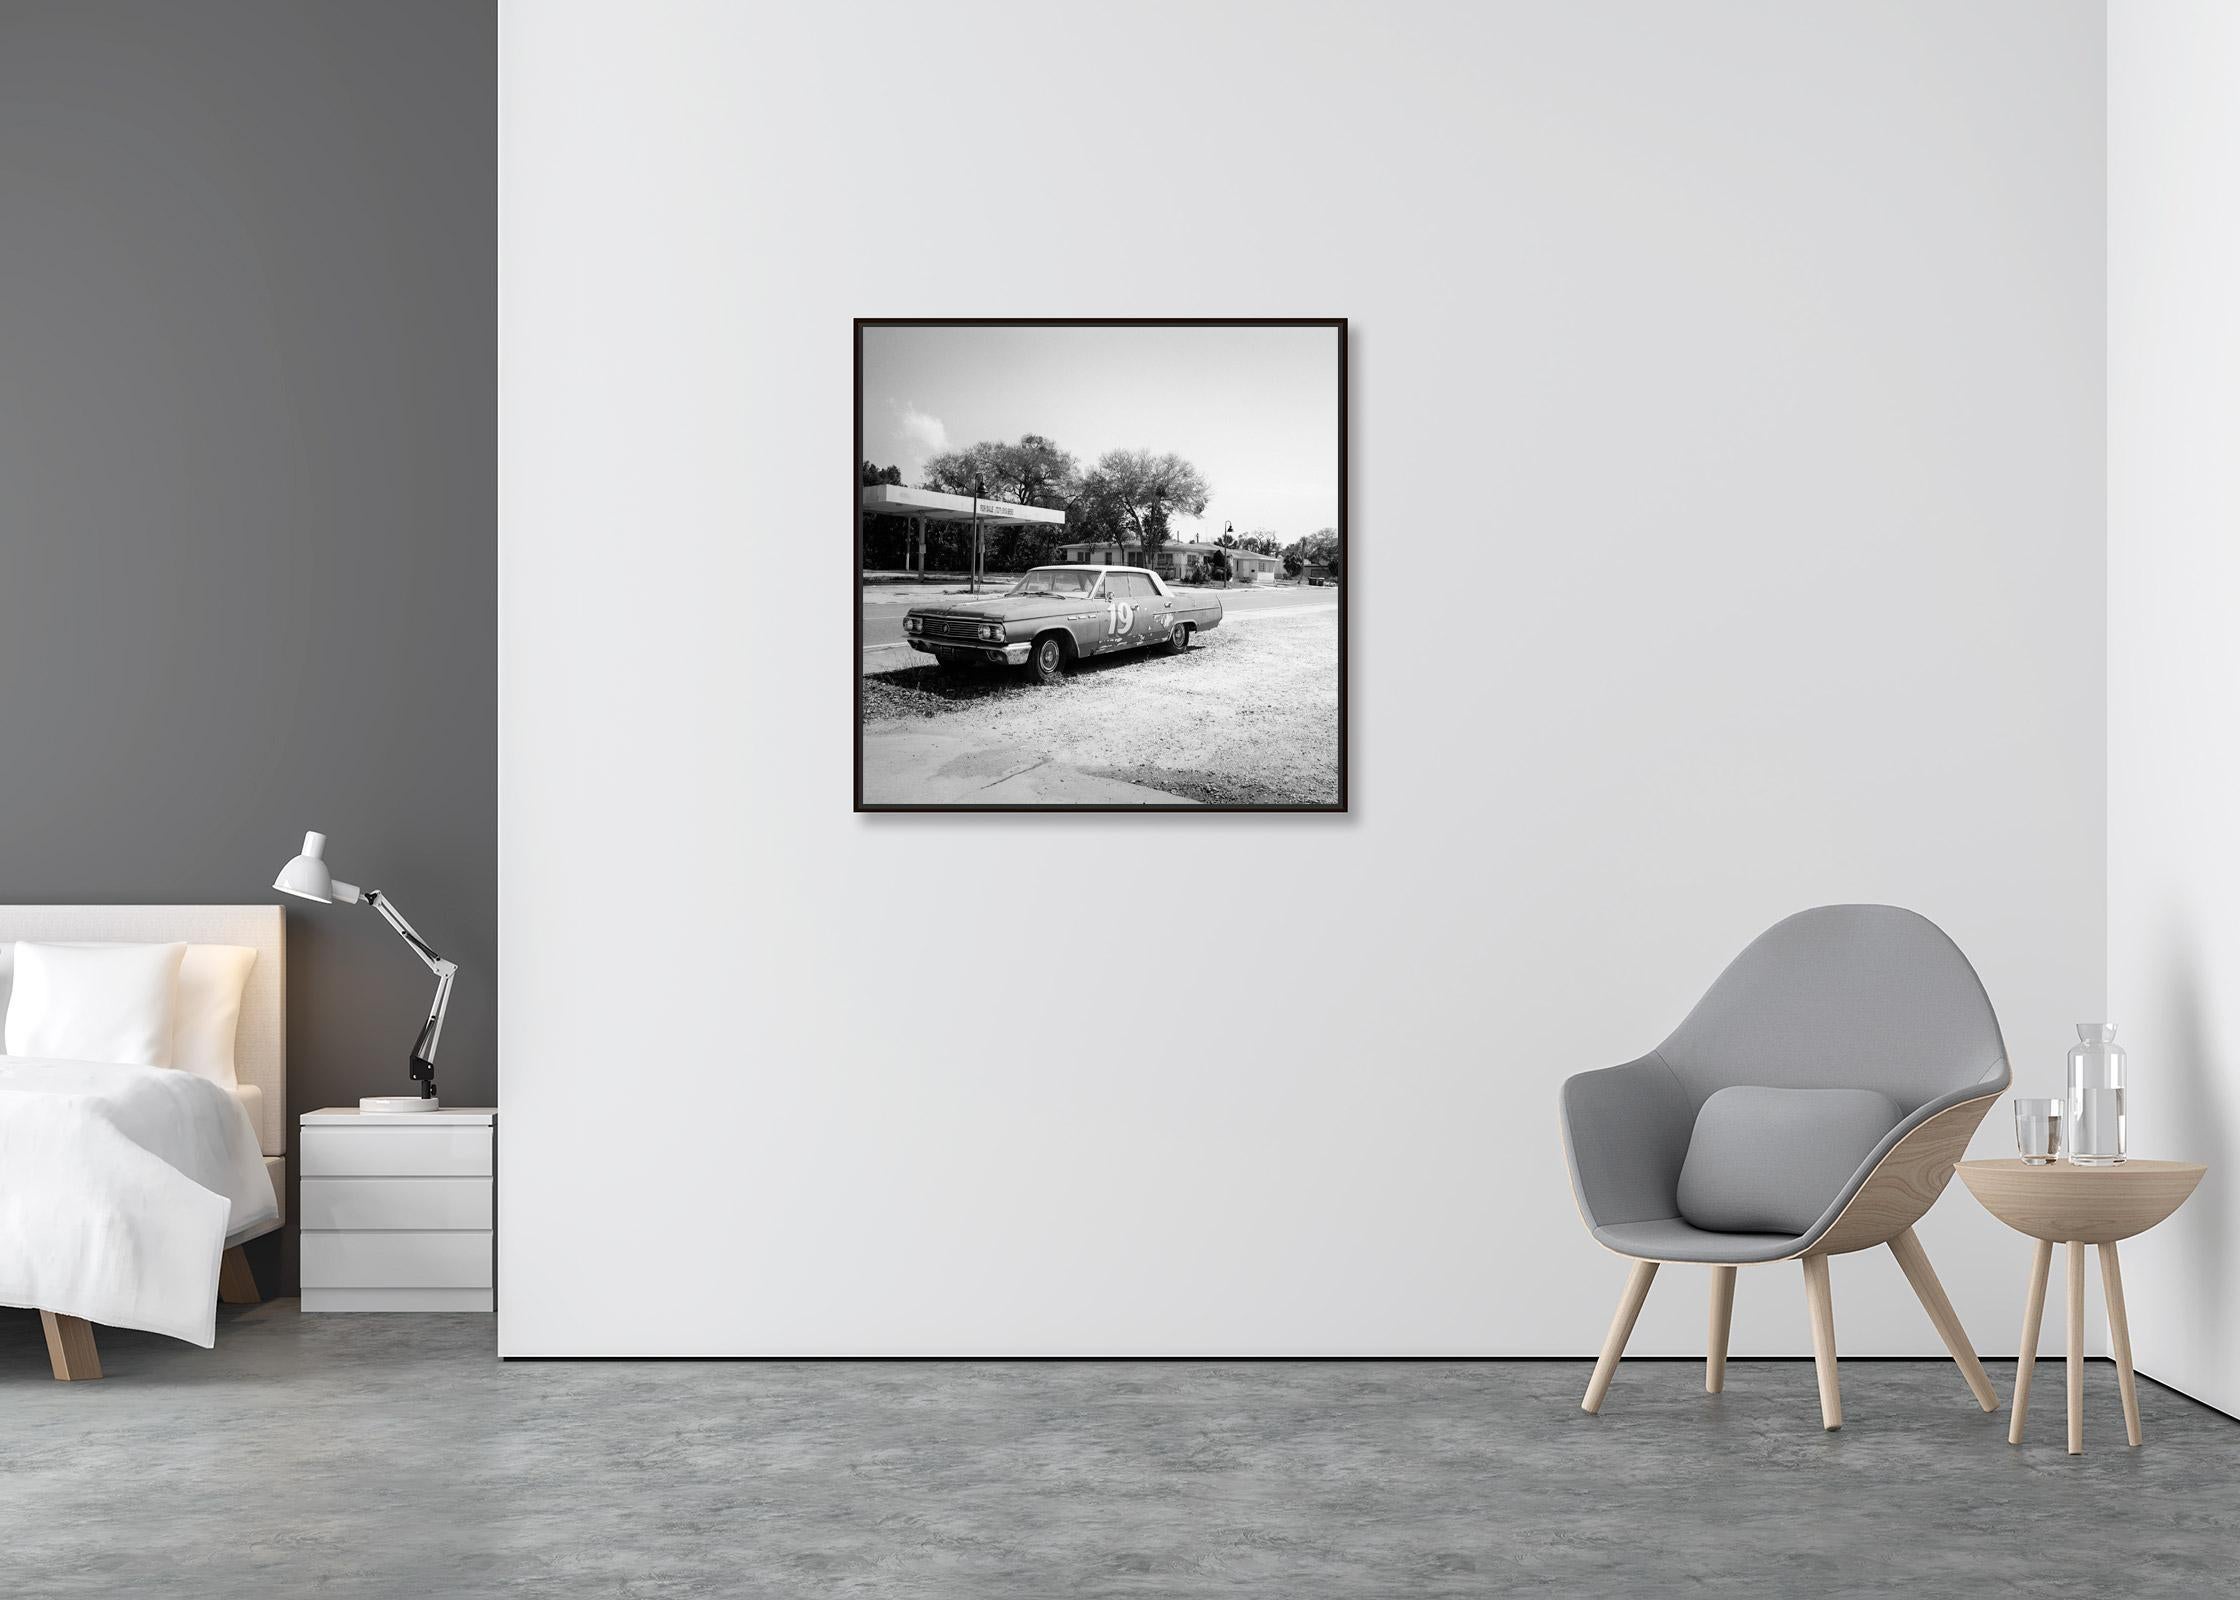 Buick zum Verkauf, Oldtimer, Florida, USA, Schwarz-Weiß-Landschaftsfotografie (Zeitgenössisch), Photograph, von Gerald Berghammer